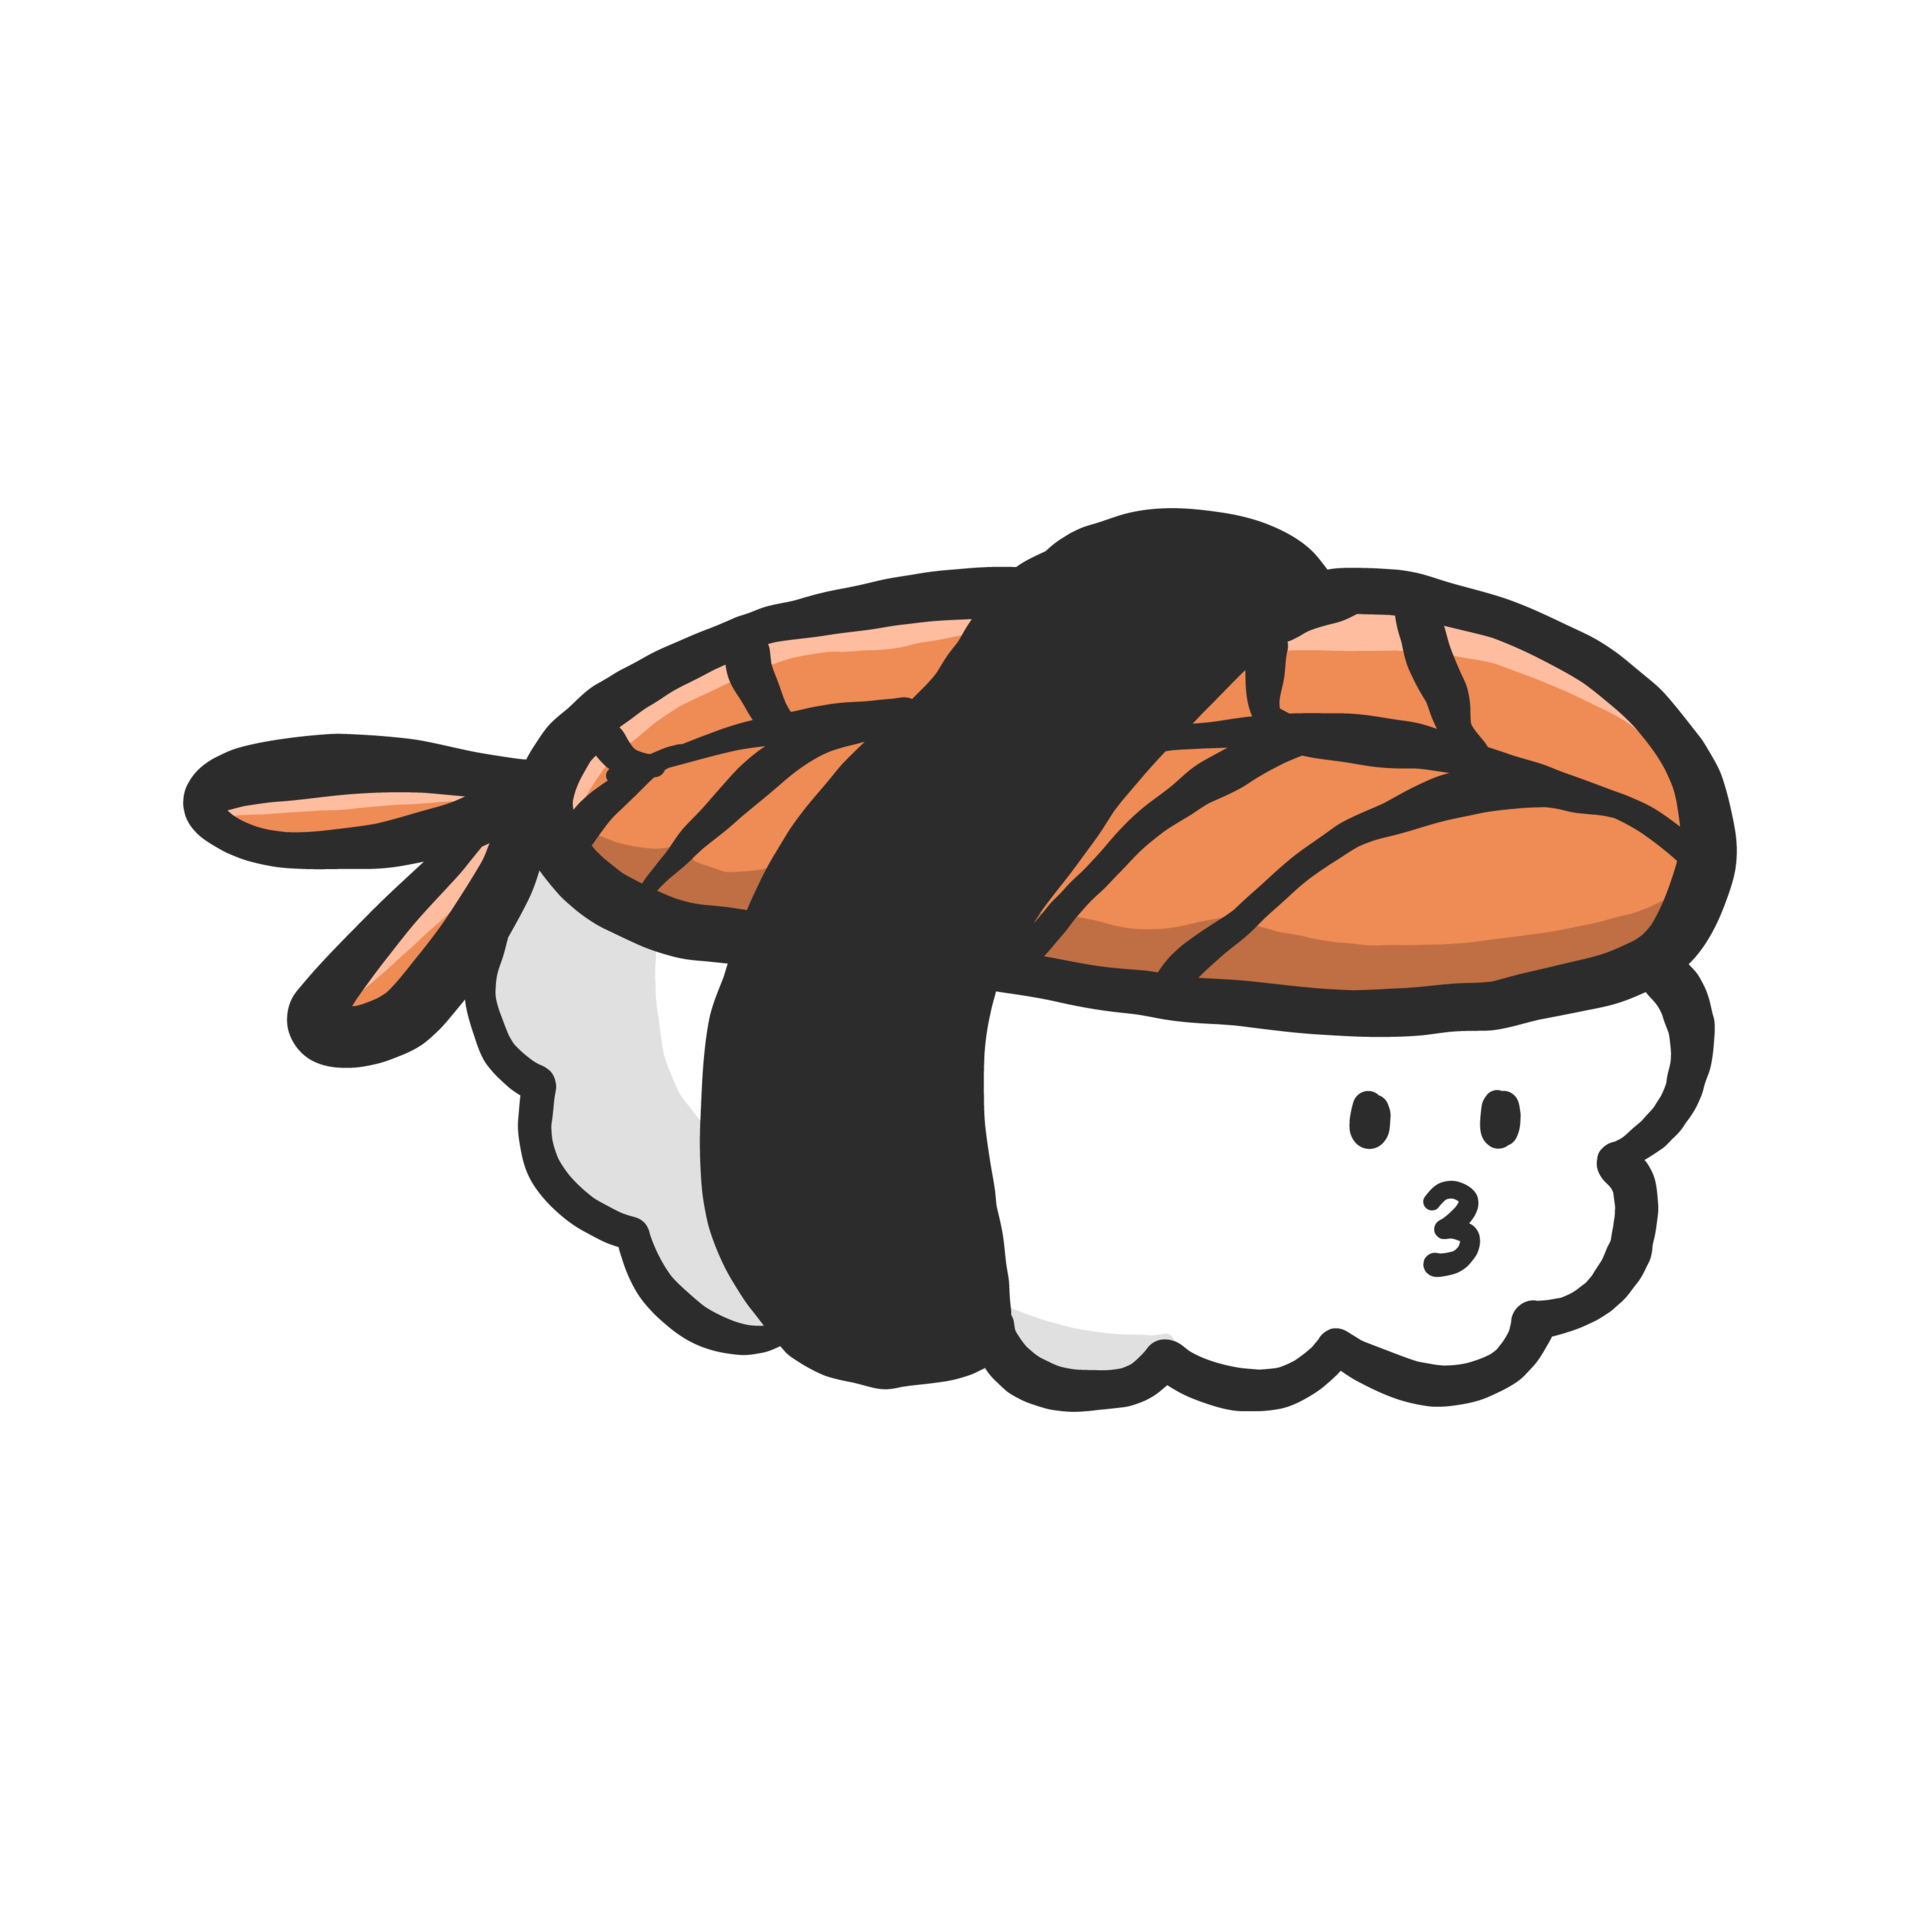 Free lindo personaje de comida. comida japonesa tradicional de sushi  divertido en dibujos animados. ilustración kawaii para emoticono, símbolo,  icono, etc. 10950279 PNG with Transparent Background